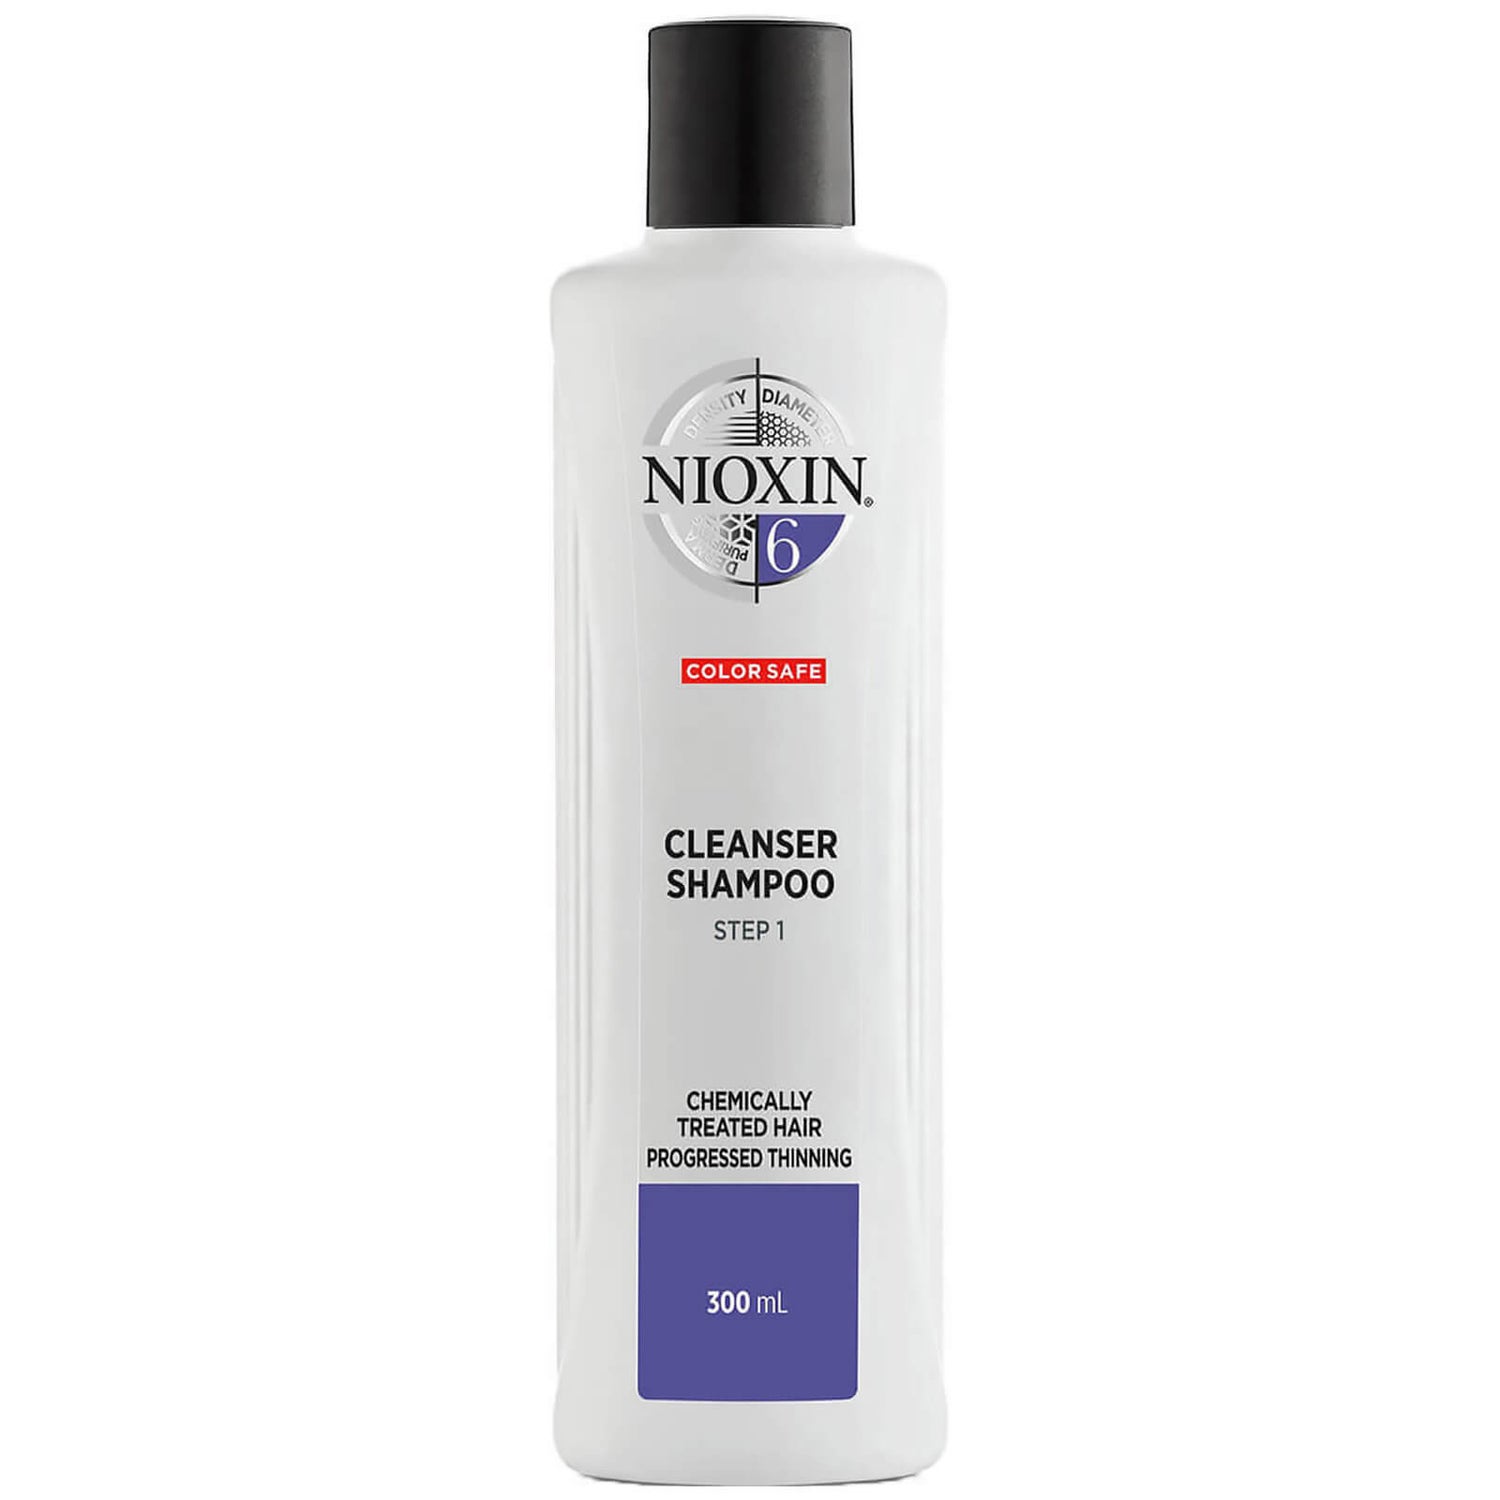 Shampooing Nettoyant System 6 3 Étapes pour les cheveux Traités Chimiquement avec Perte Régulière des Cheveux NIOXIN 300 ml